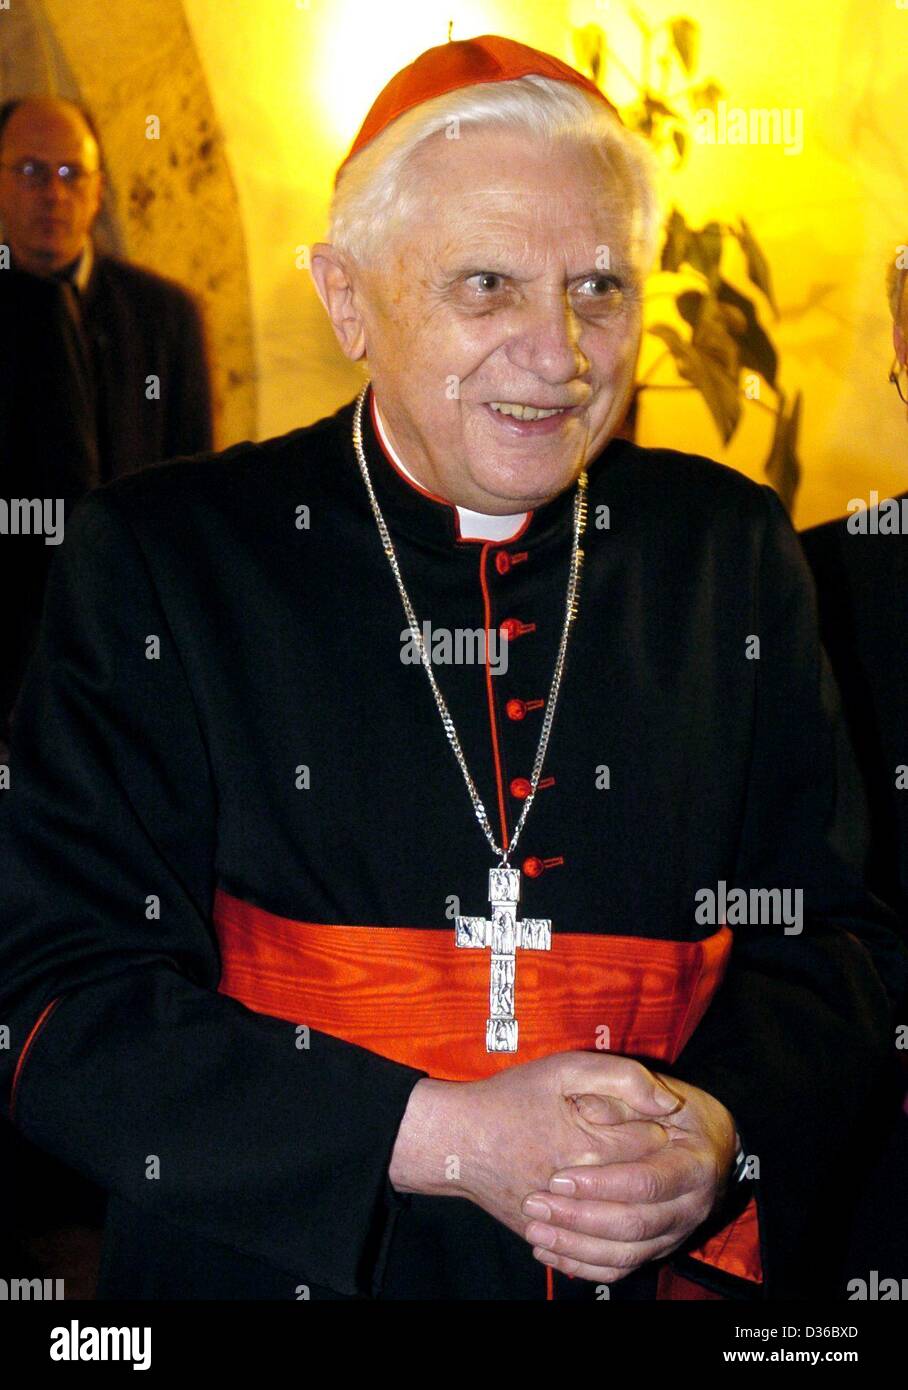 (Afp) - le cardinal Joseph Ratzinger, allemand, représenté à Regensburg, Allemagne, 15 janvier 2004. Ratzinger a été élu nouveau pape le mardi 19 avril 2005, se nommant Benoît XVI. Banque D'Images